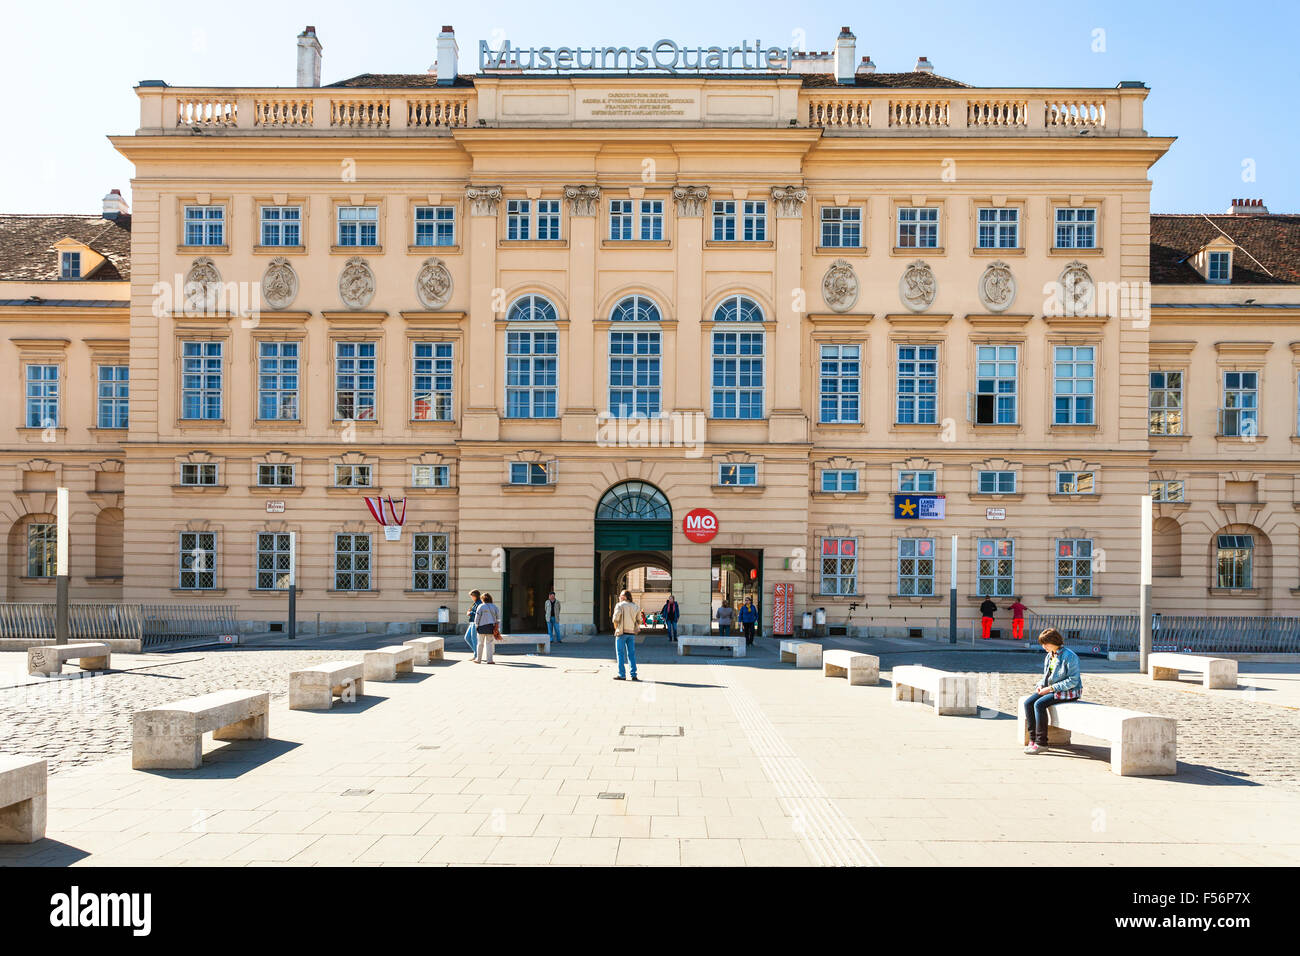 Vienne, Autriche - 1 octobre, 2015 : entrée principale du quartier des musées (MQW) dans la ville de Vienne. Sur 60000 m² Museumsquartier est larg Banque D'Images